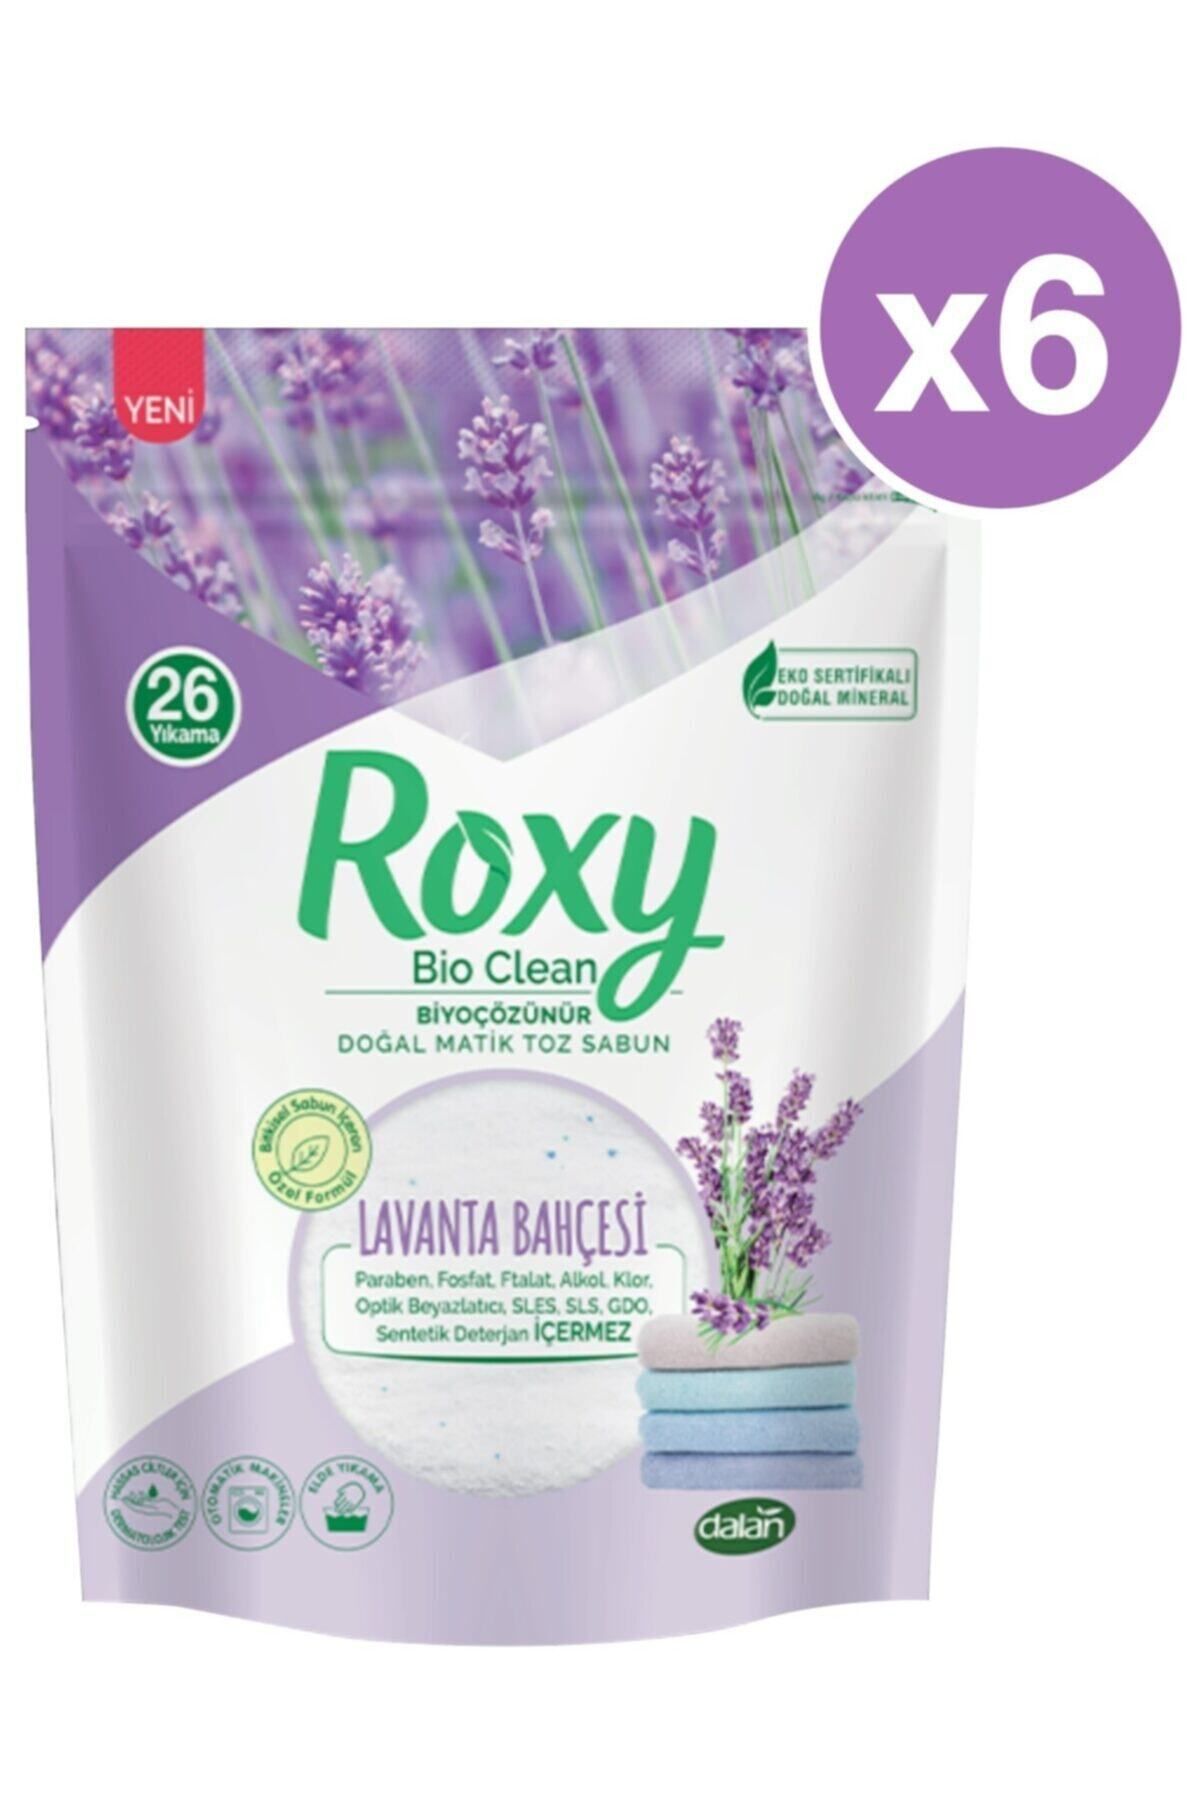 Dalan Roxy Bio Clean Lavanta Bahçesi Toz Sabun 800 Gr (26 Yıkama) X 6 Adet